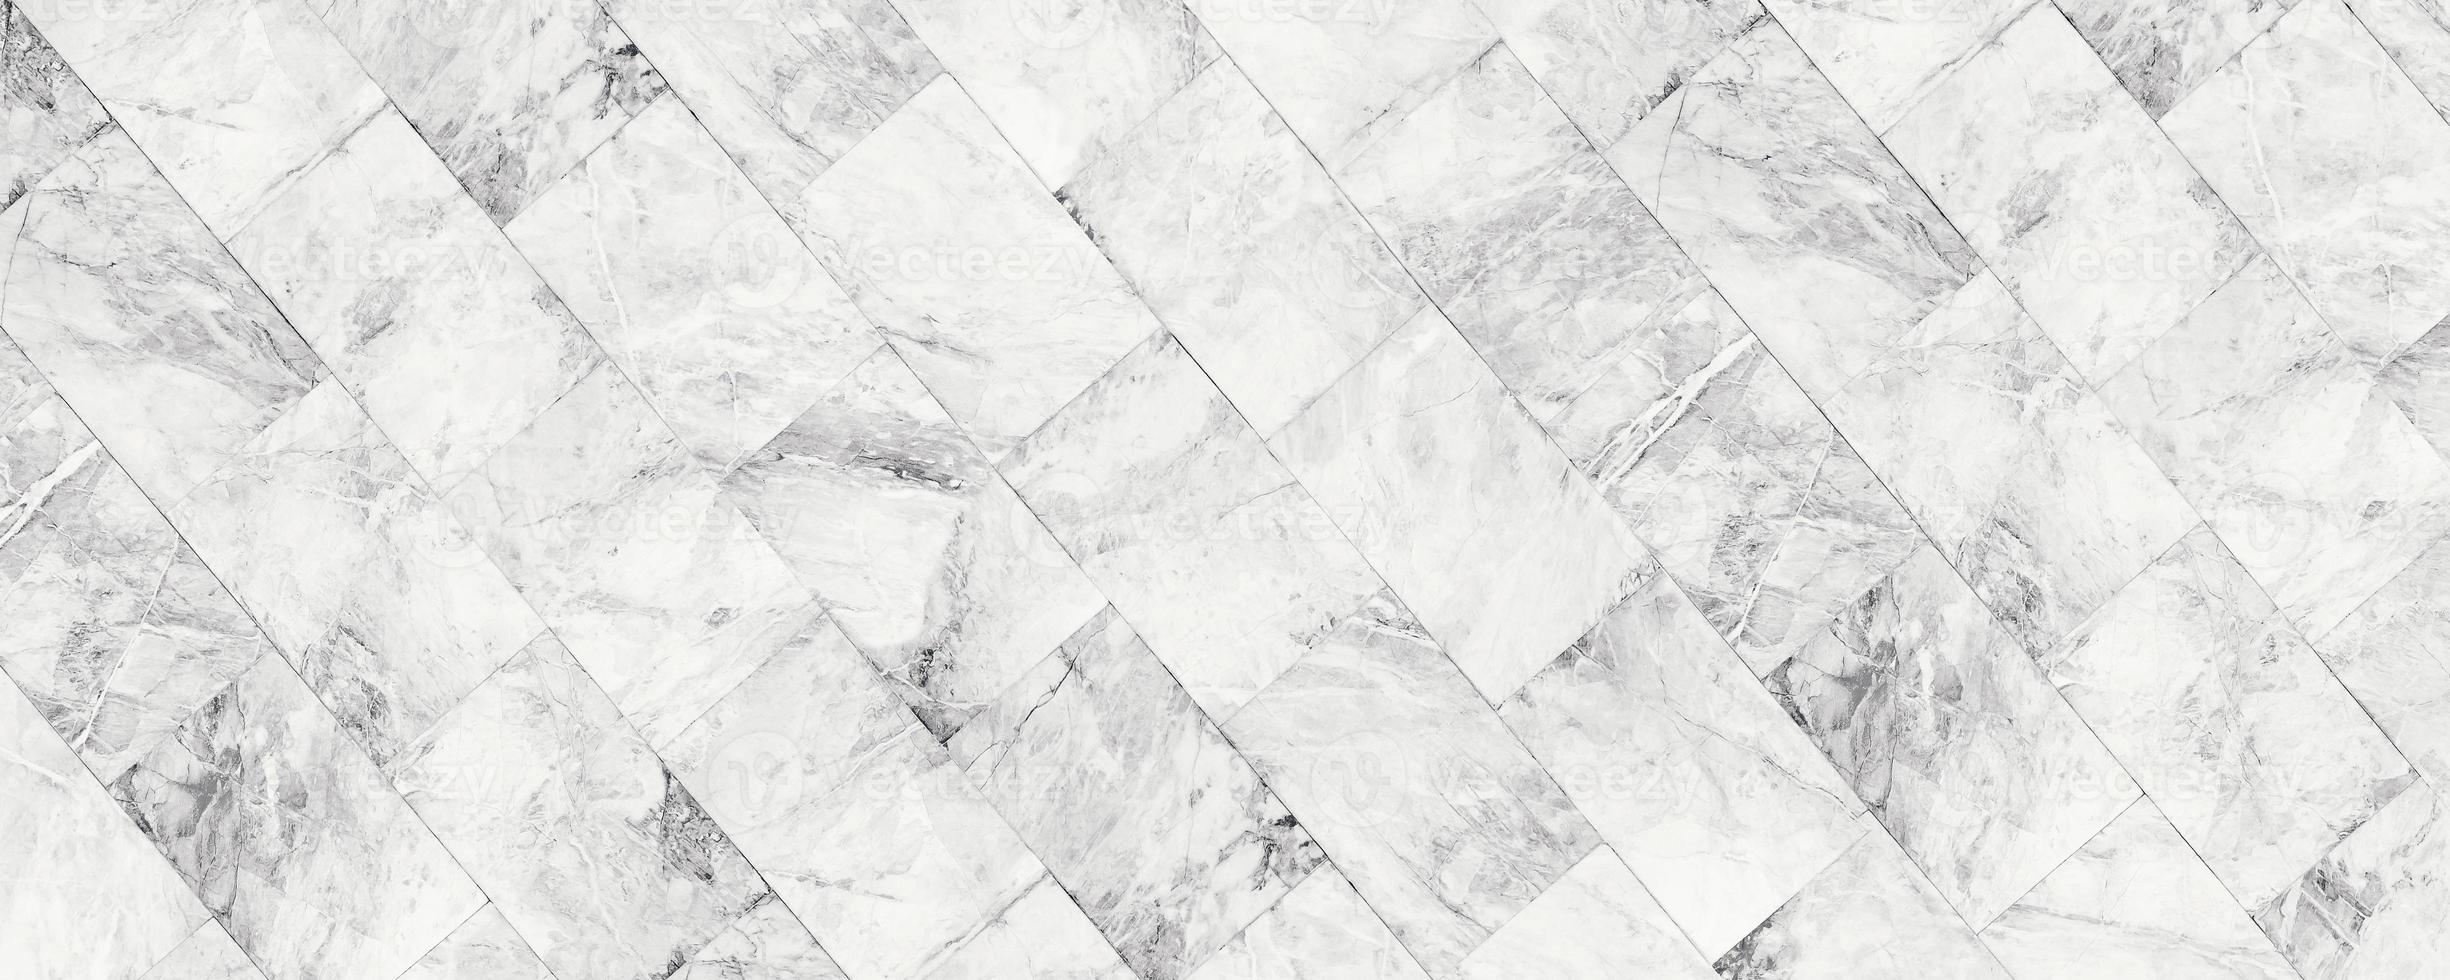 Weiße Marmorsteinbeschaffenheit des Panoramas für Hintergrund oder luxuriösen Fliesenboden und dekoratives Design der Tapete. foto